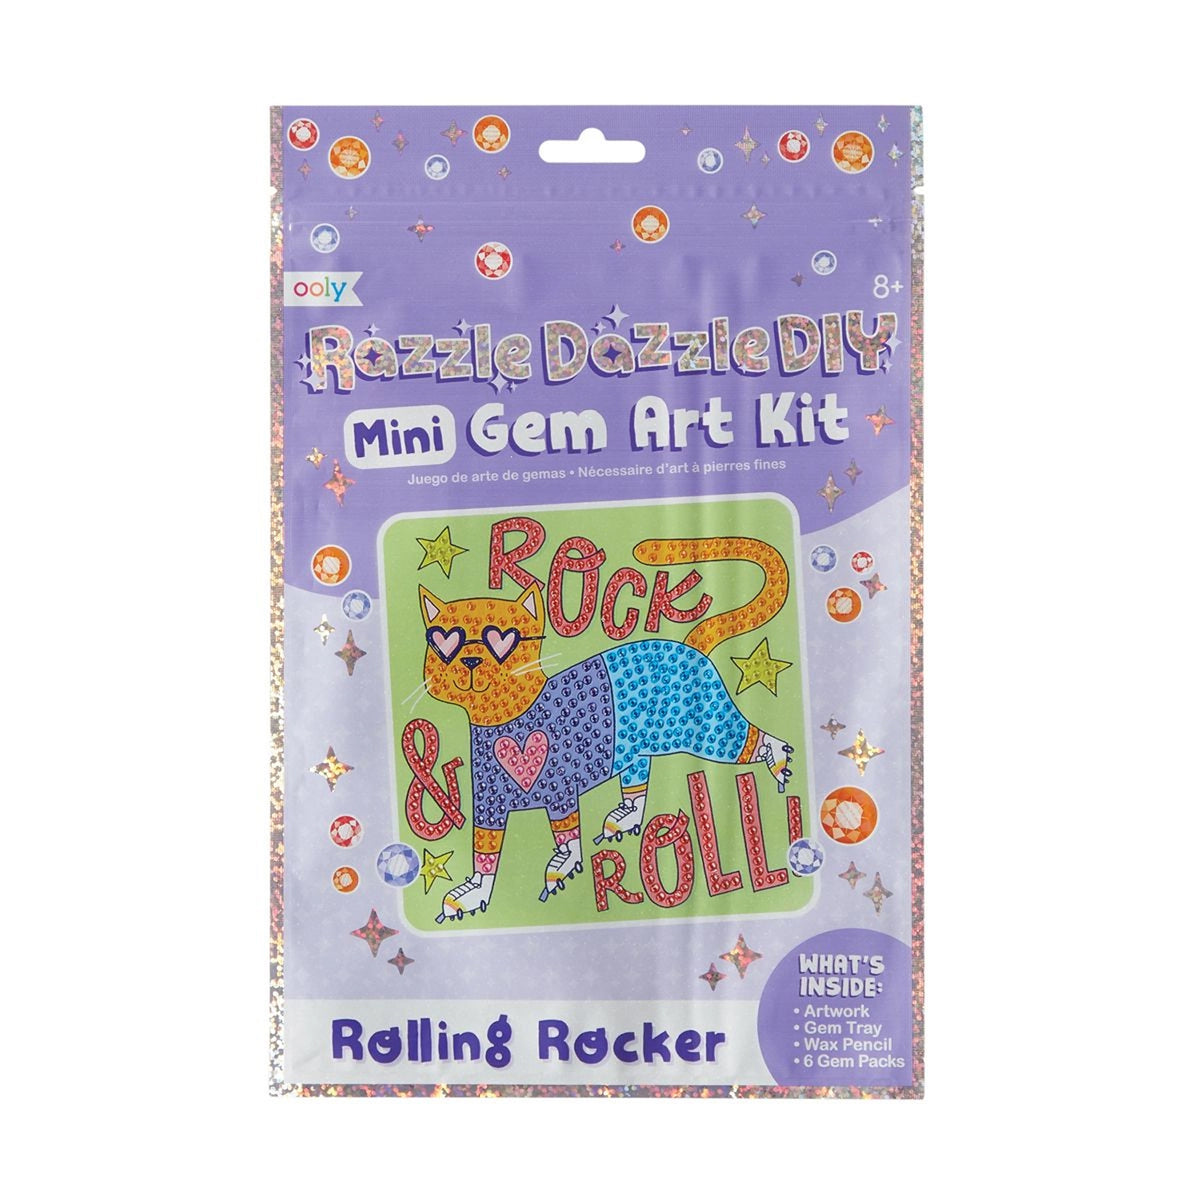 Razzle Dazzle D.I.Y. Mini Gem Art Kit: Rolling Rocker - FINAL SALE